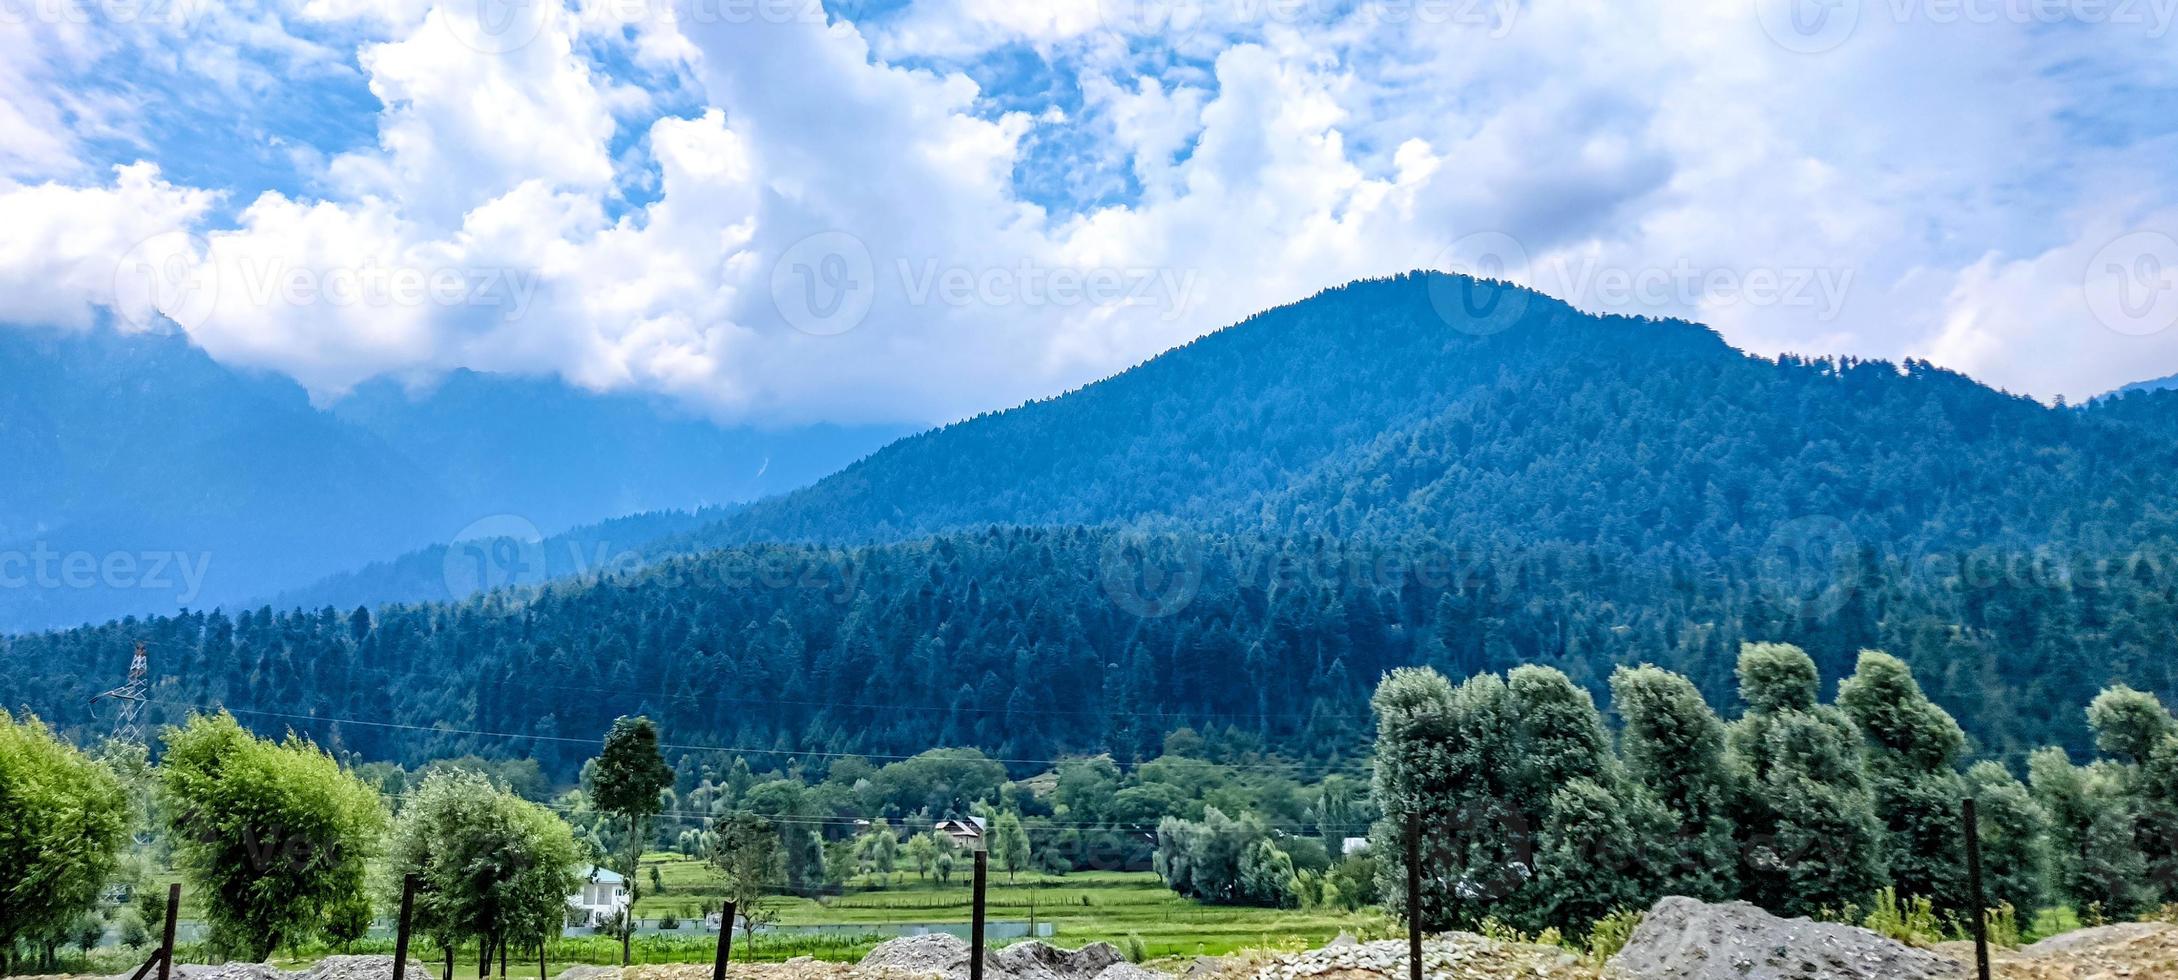 mooi berg en bewolkt lucht visie van jammu en Kasjmir foto